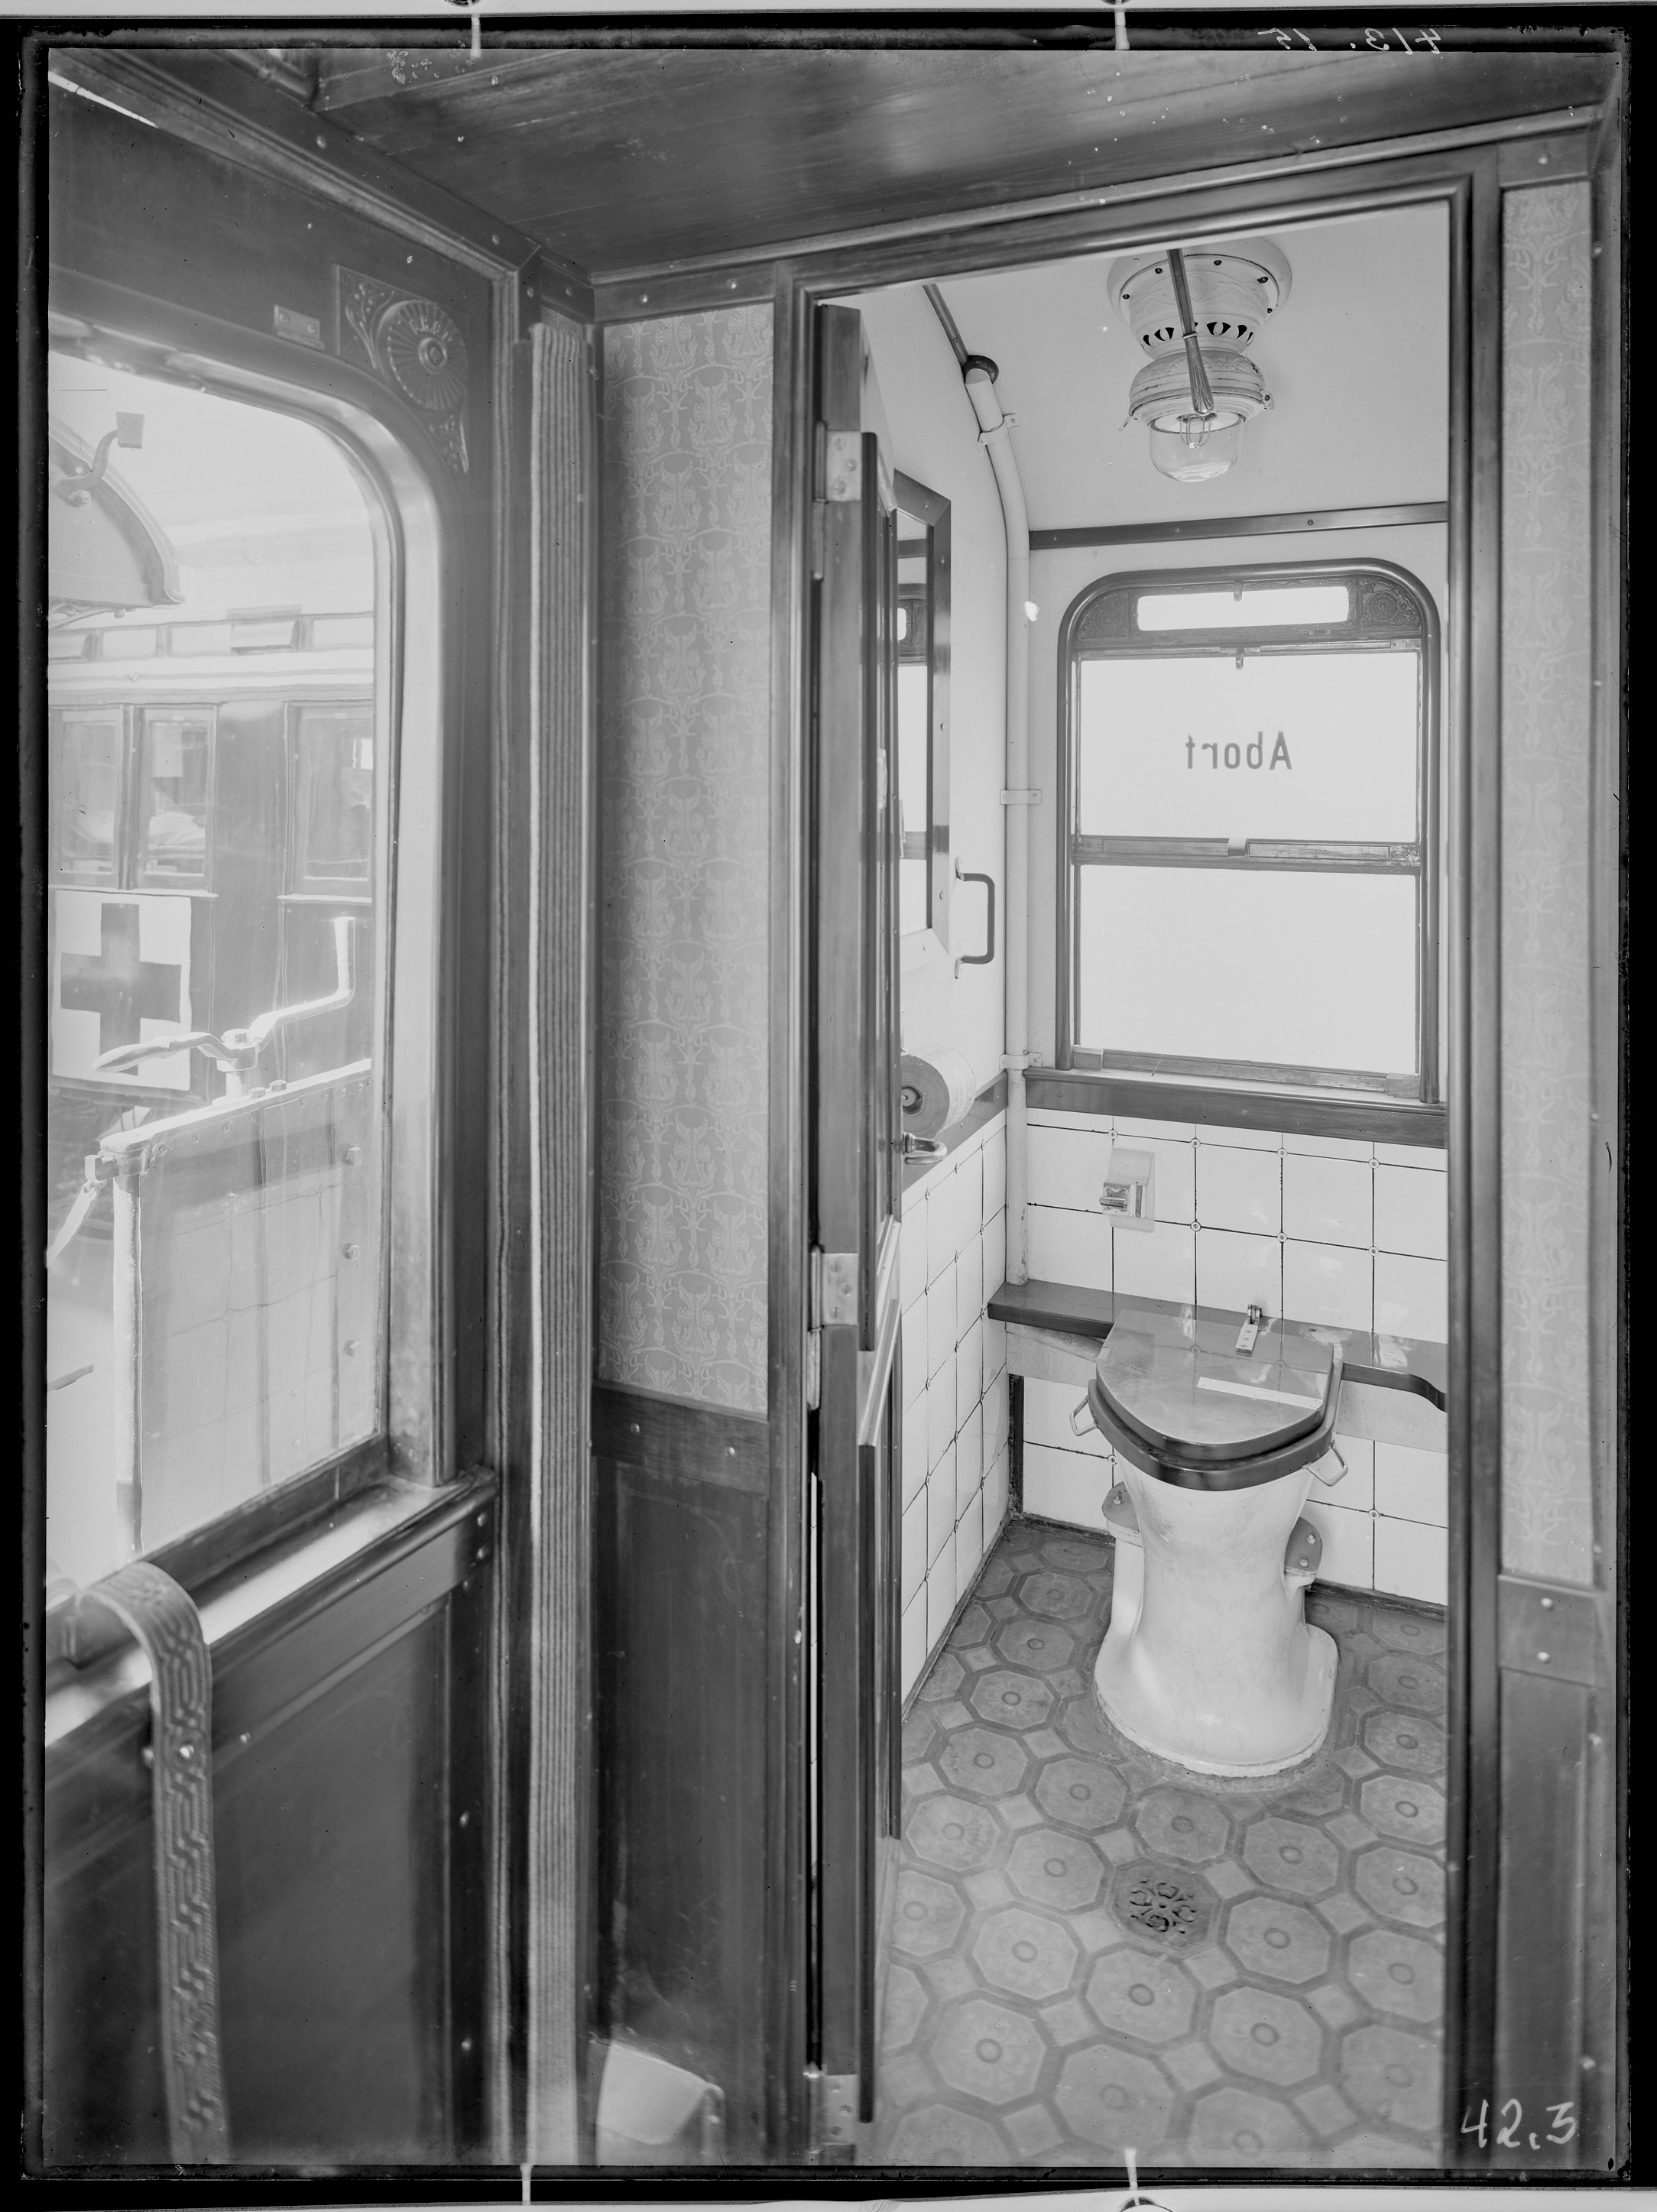 Fotografie: Vereinslazarettzug "J2 Görlitz Preußische Oberlausitz" (Innenansicht), vermutlich dreiachsiger Arztwagen, Toilettenraum, 1915. (Verkehrsmuseum Dresden CC BY-NC-SA)